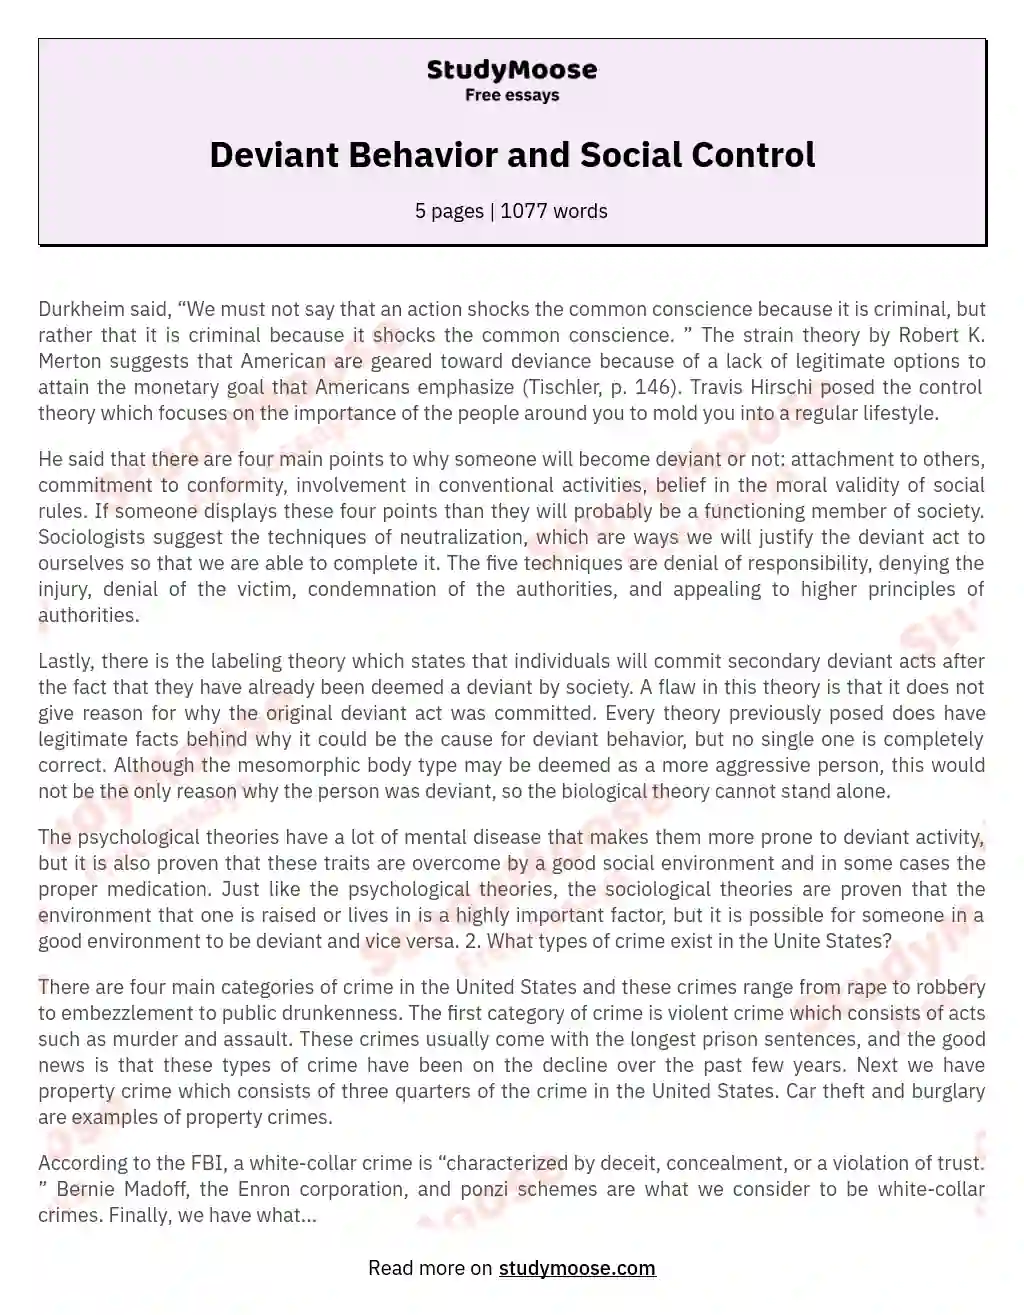 Societal Factors and Deviant Behavior: A Comprehensive Analysis essay